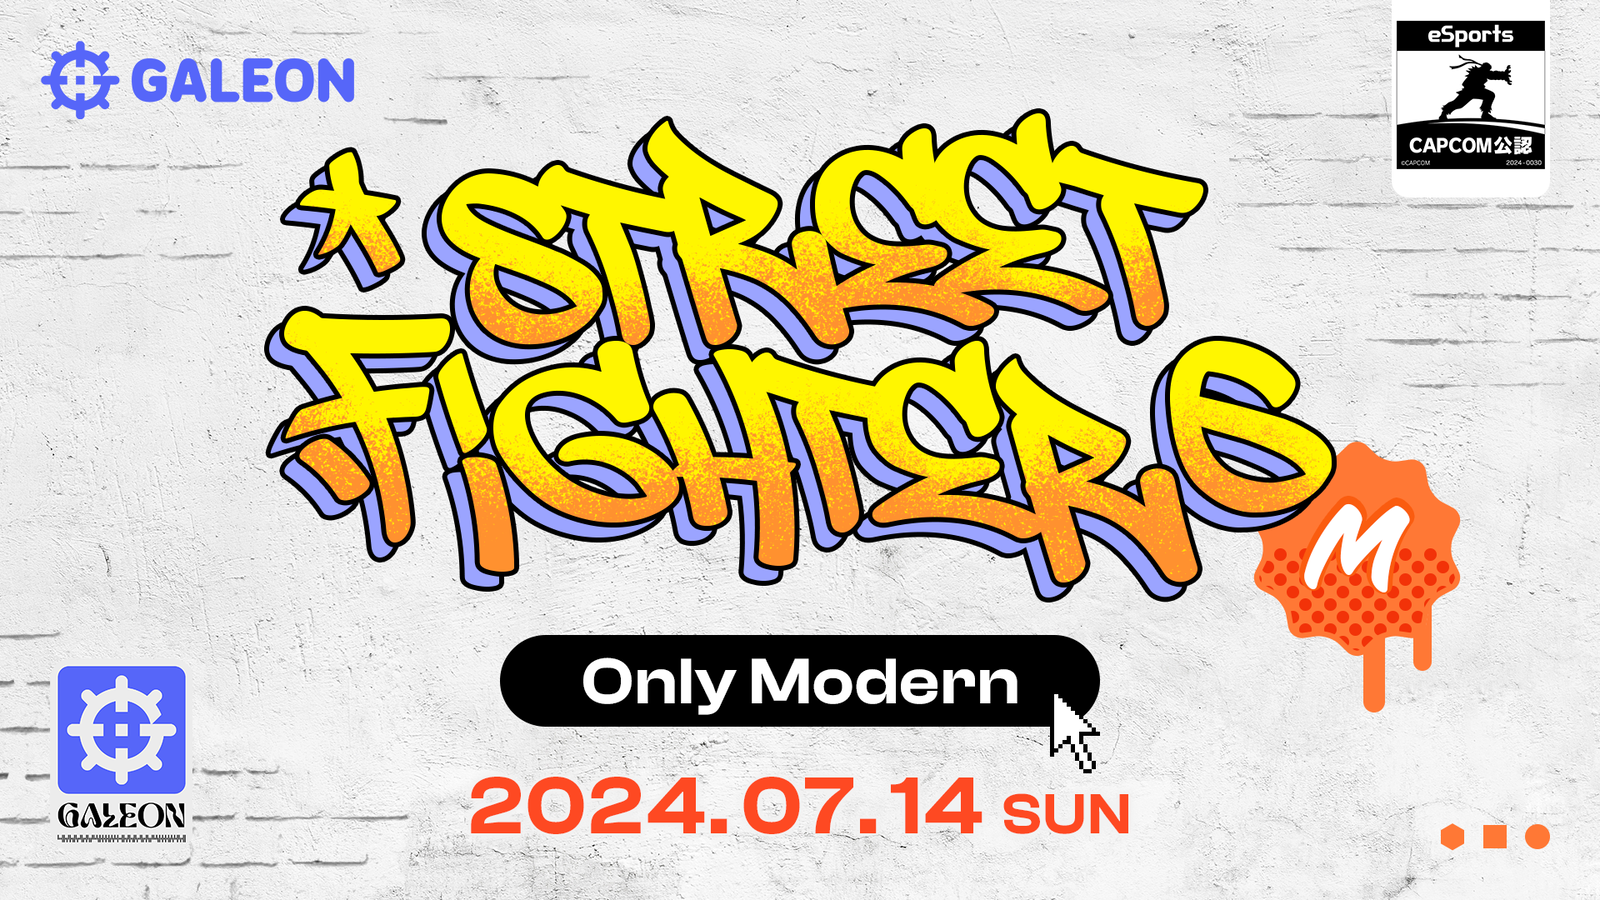 【モダン限定】GALEON STREET FIGHTER 6 Only Modern